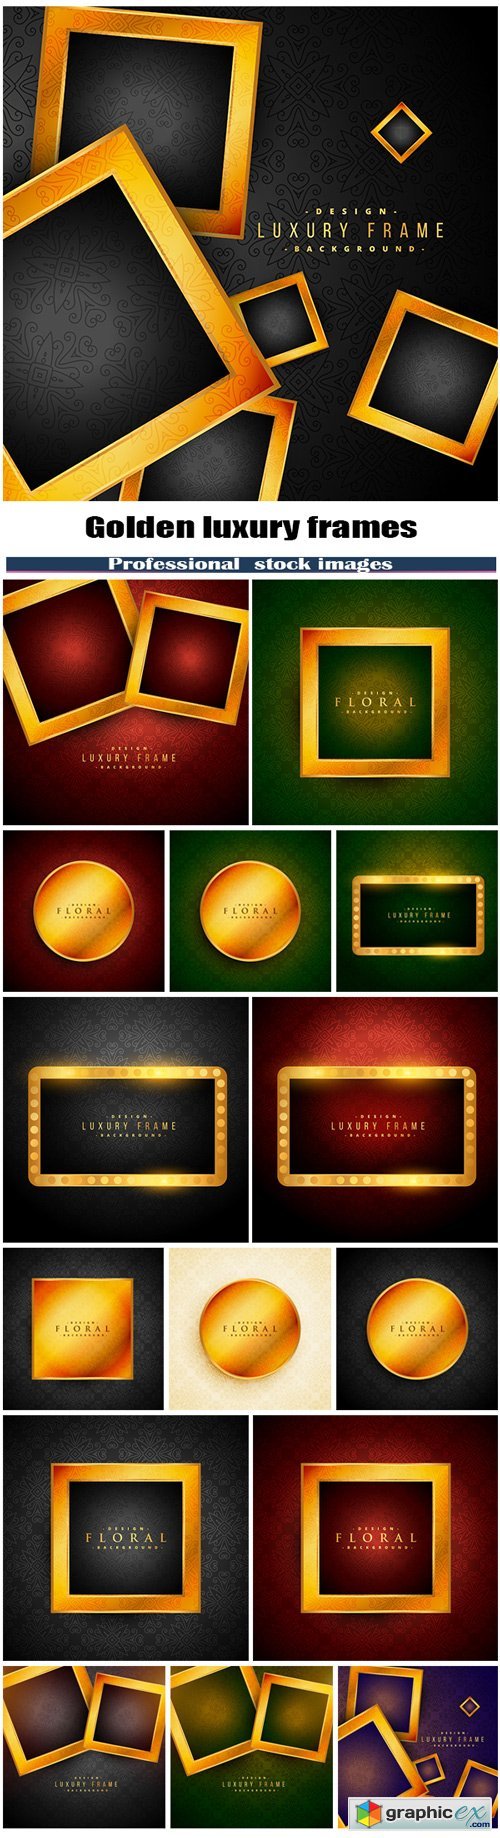 Golden luxury frames on vintage background